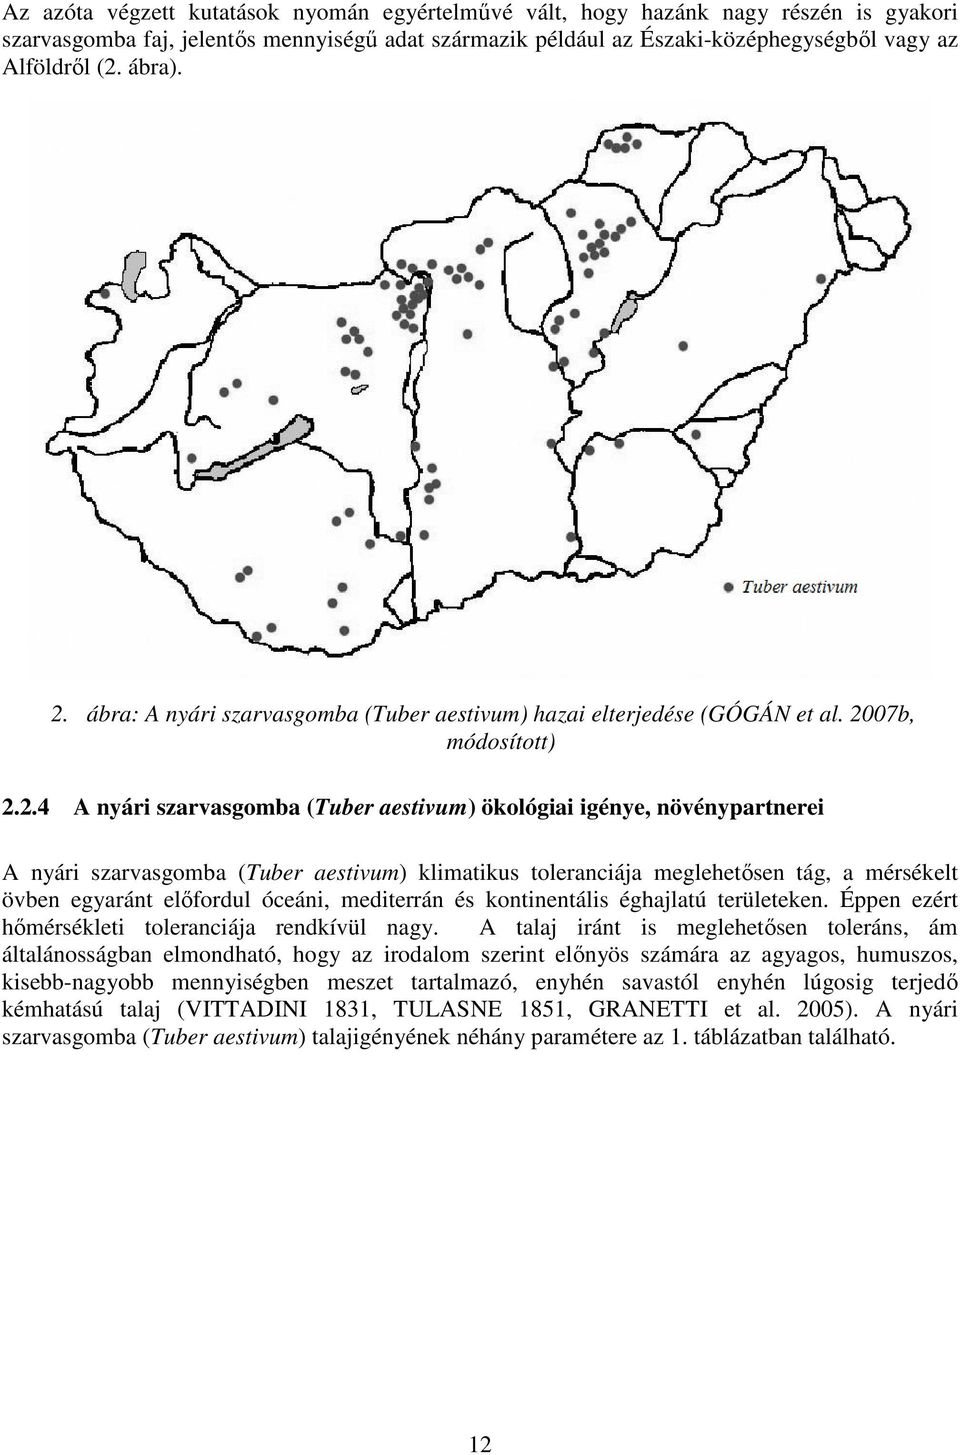 ábra: A nyári szarvasgomba (Tuber aestivum) hazai elterjedése (GÓGÁN et al. 20